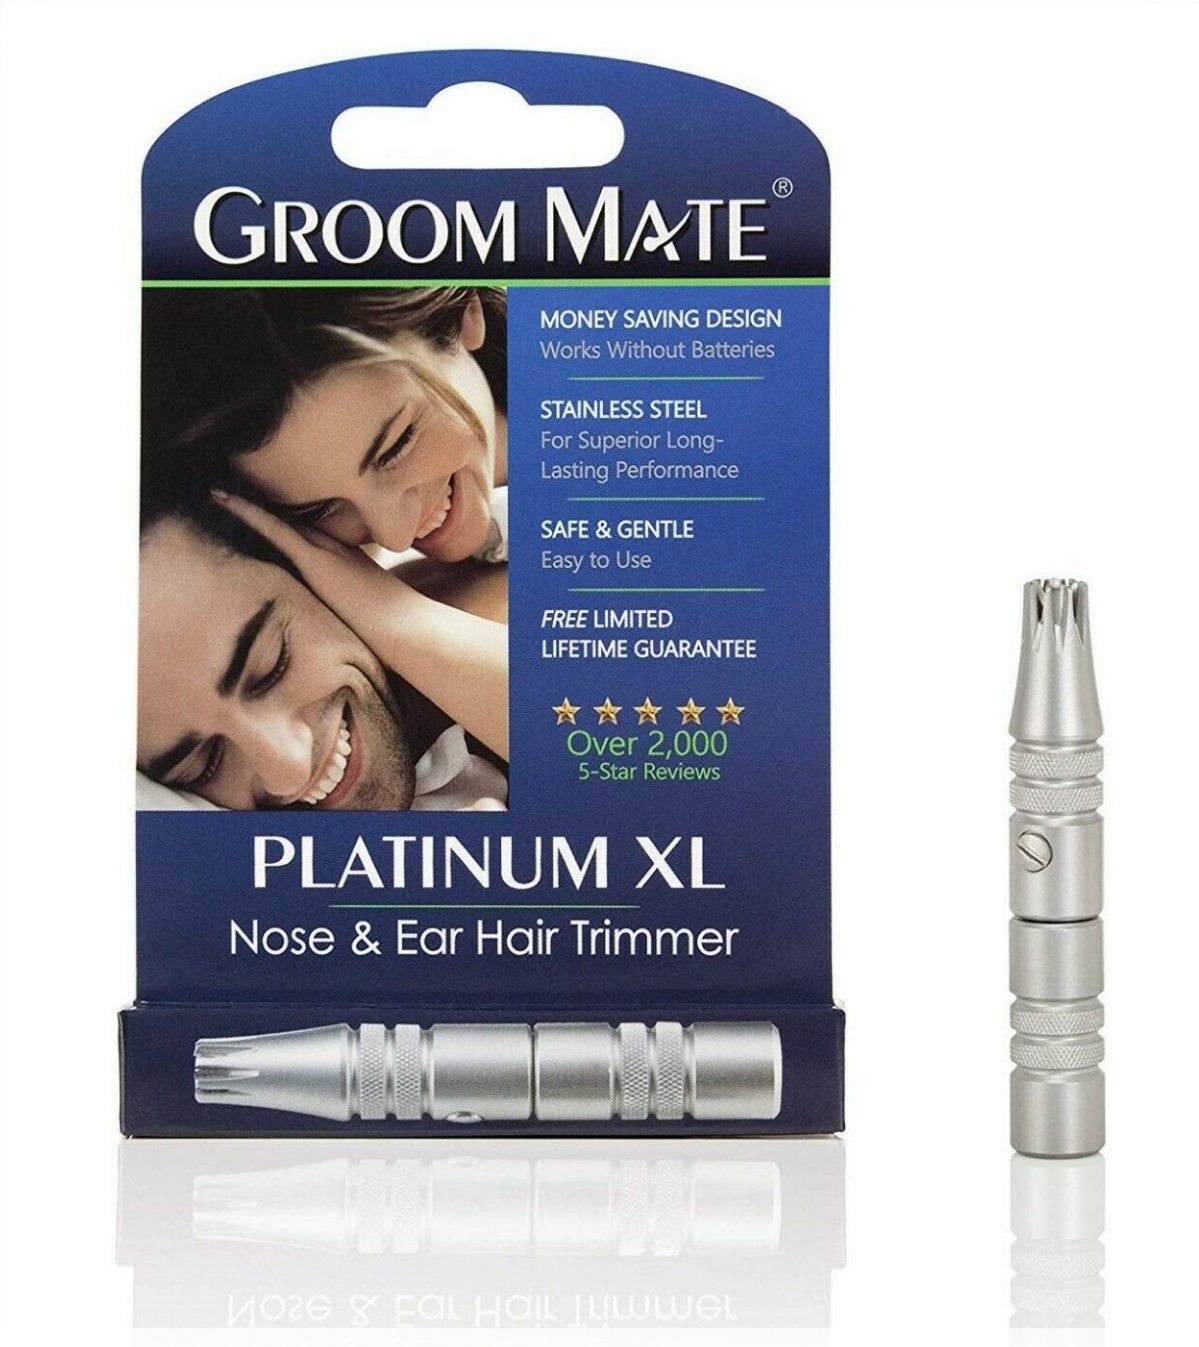 ongebruikt Gelovige Ruwe slaap Groom Mate Platinum XL Nose and Ear Hair Trimmer 744582254207 | eBay